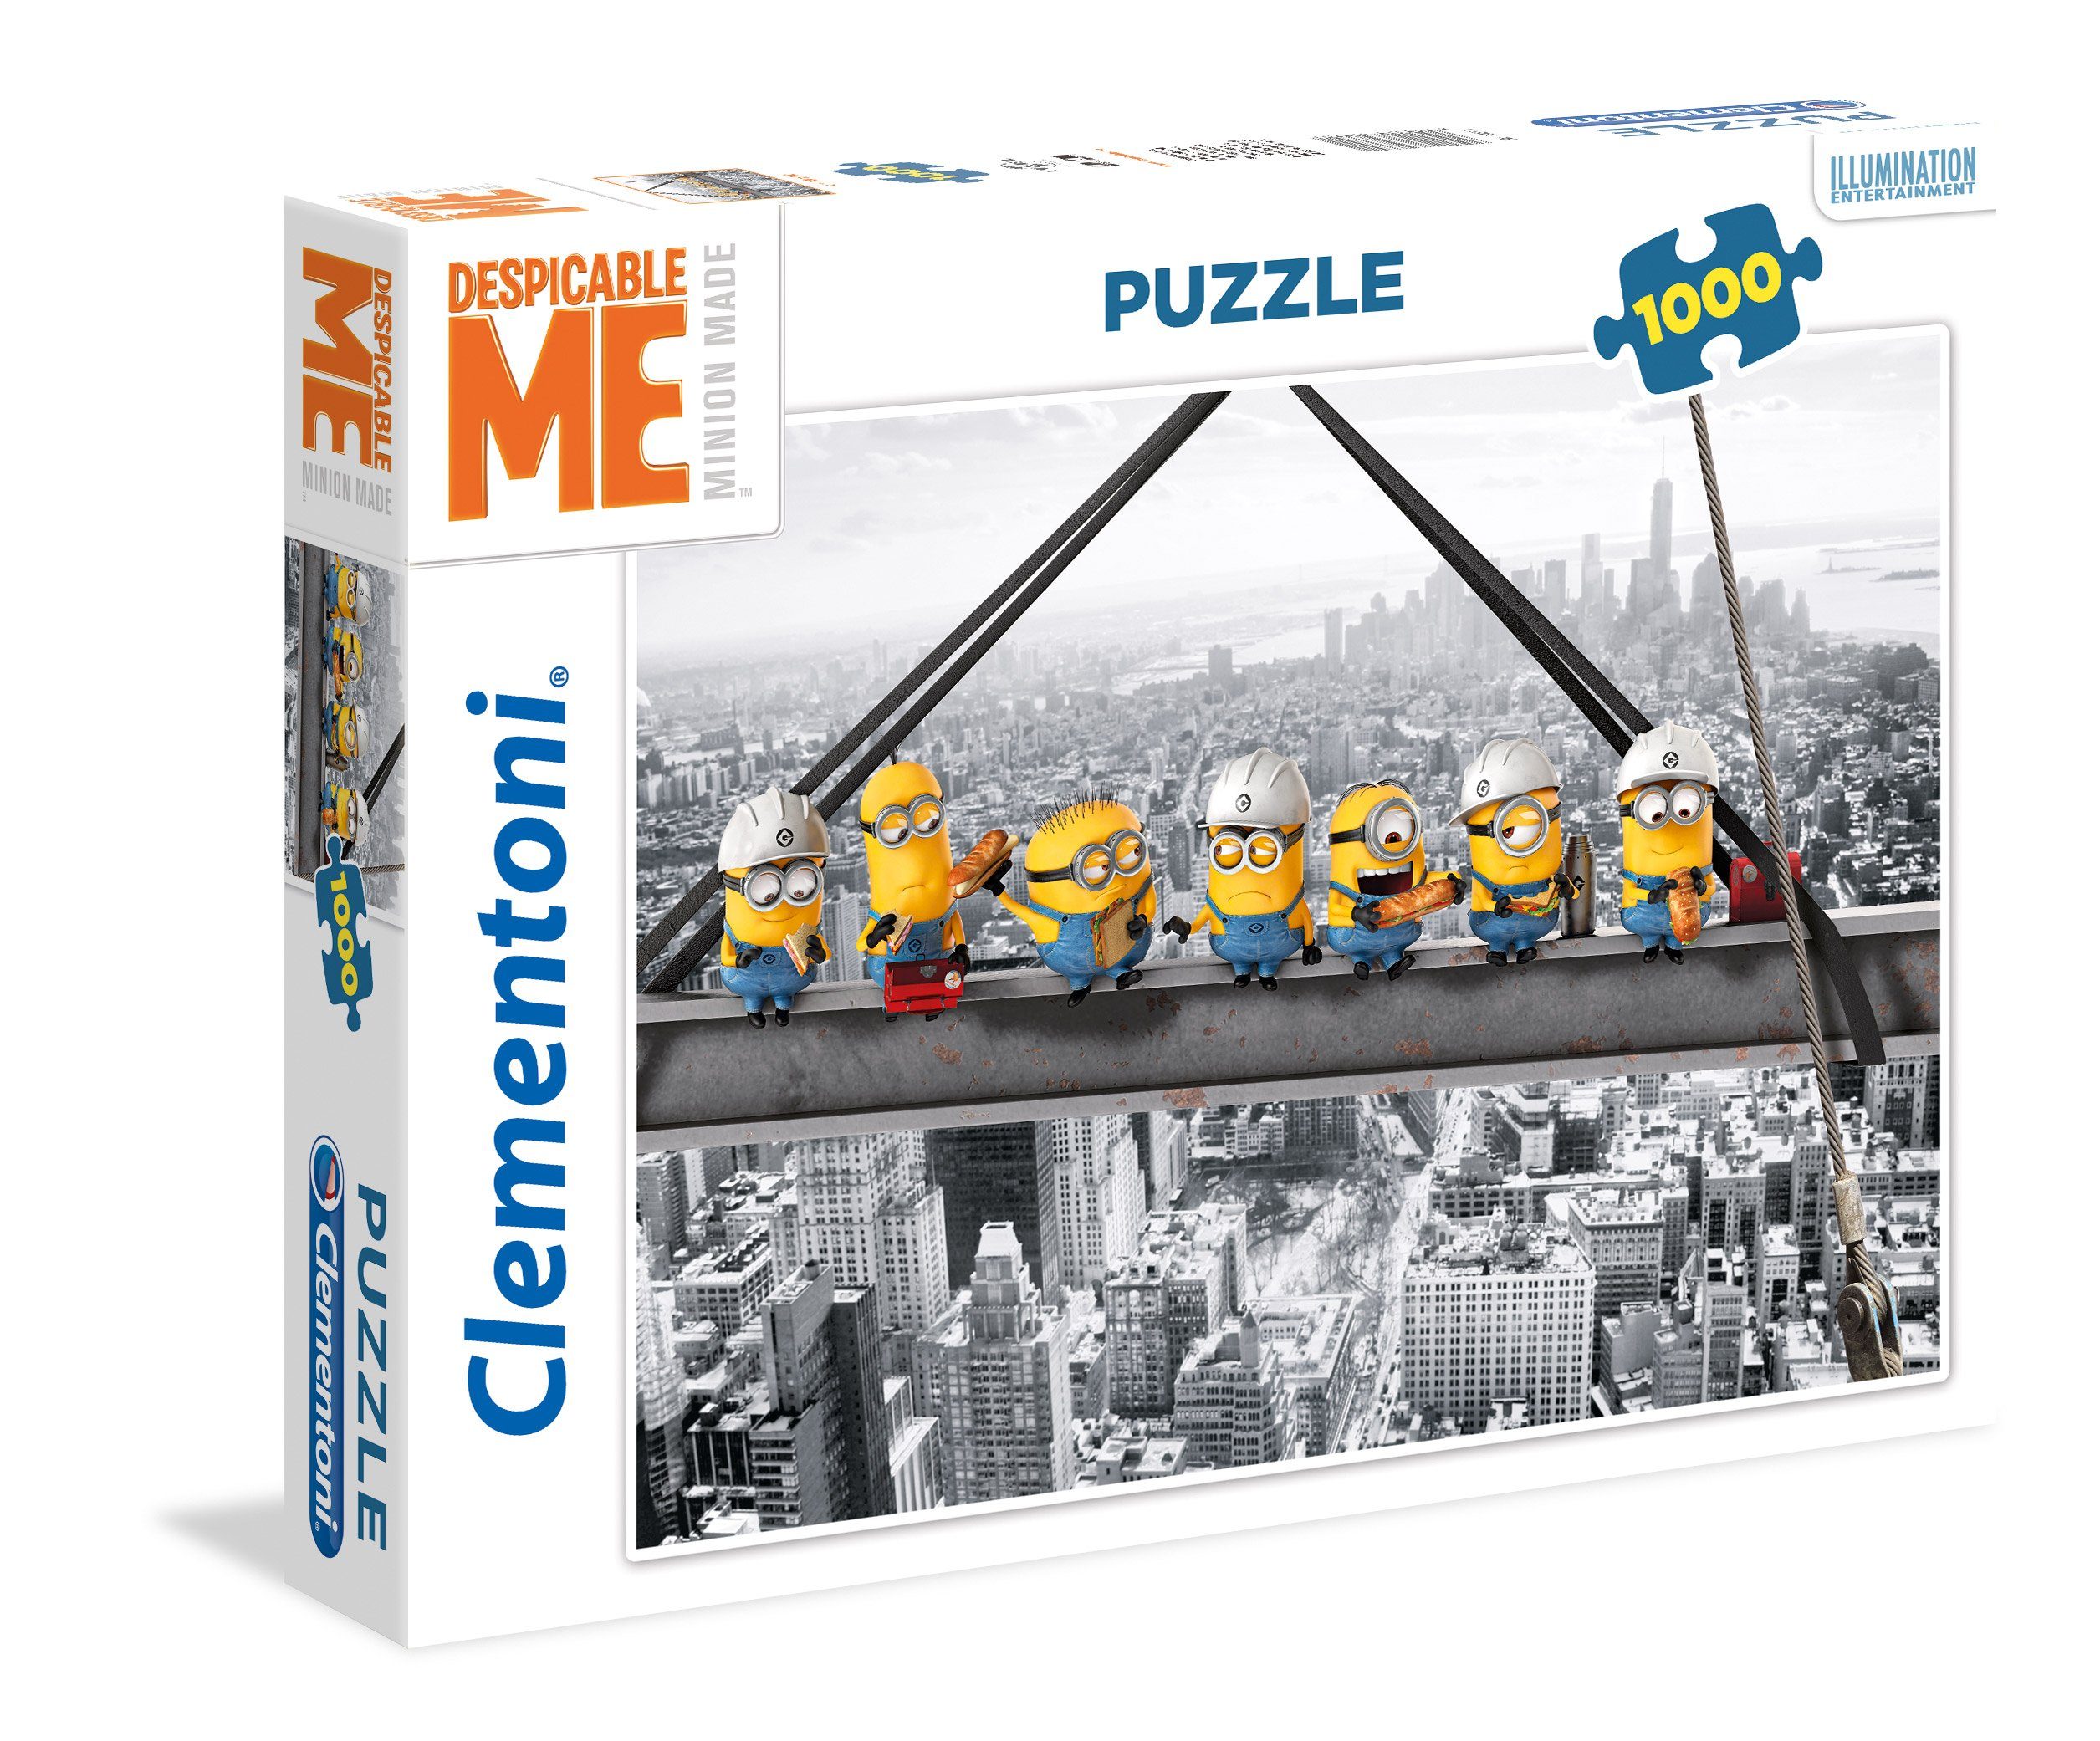 1000 Despicable Puzzleteile Puzzle Clementoni Puzzle, 1000 Teile Minions Me Clementoni®